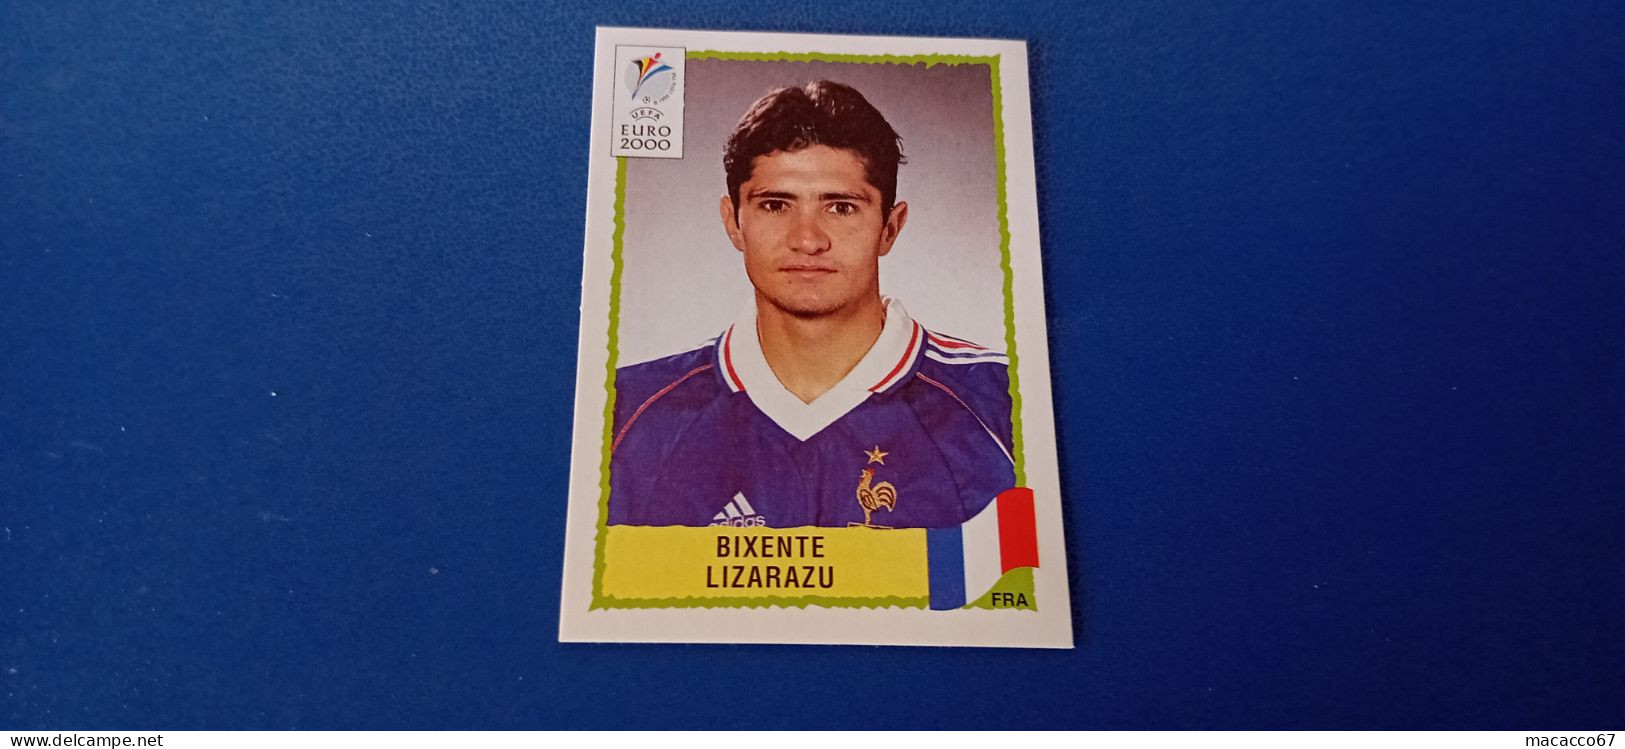 Figurina Panini Euro 2000 - 343 Lizarazu Francia - Edizione Italiana